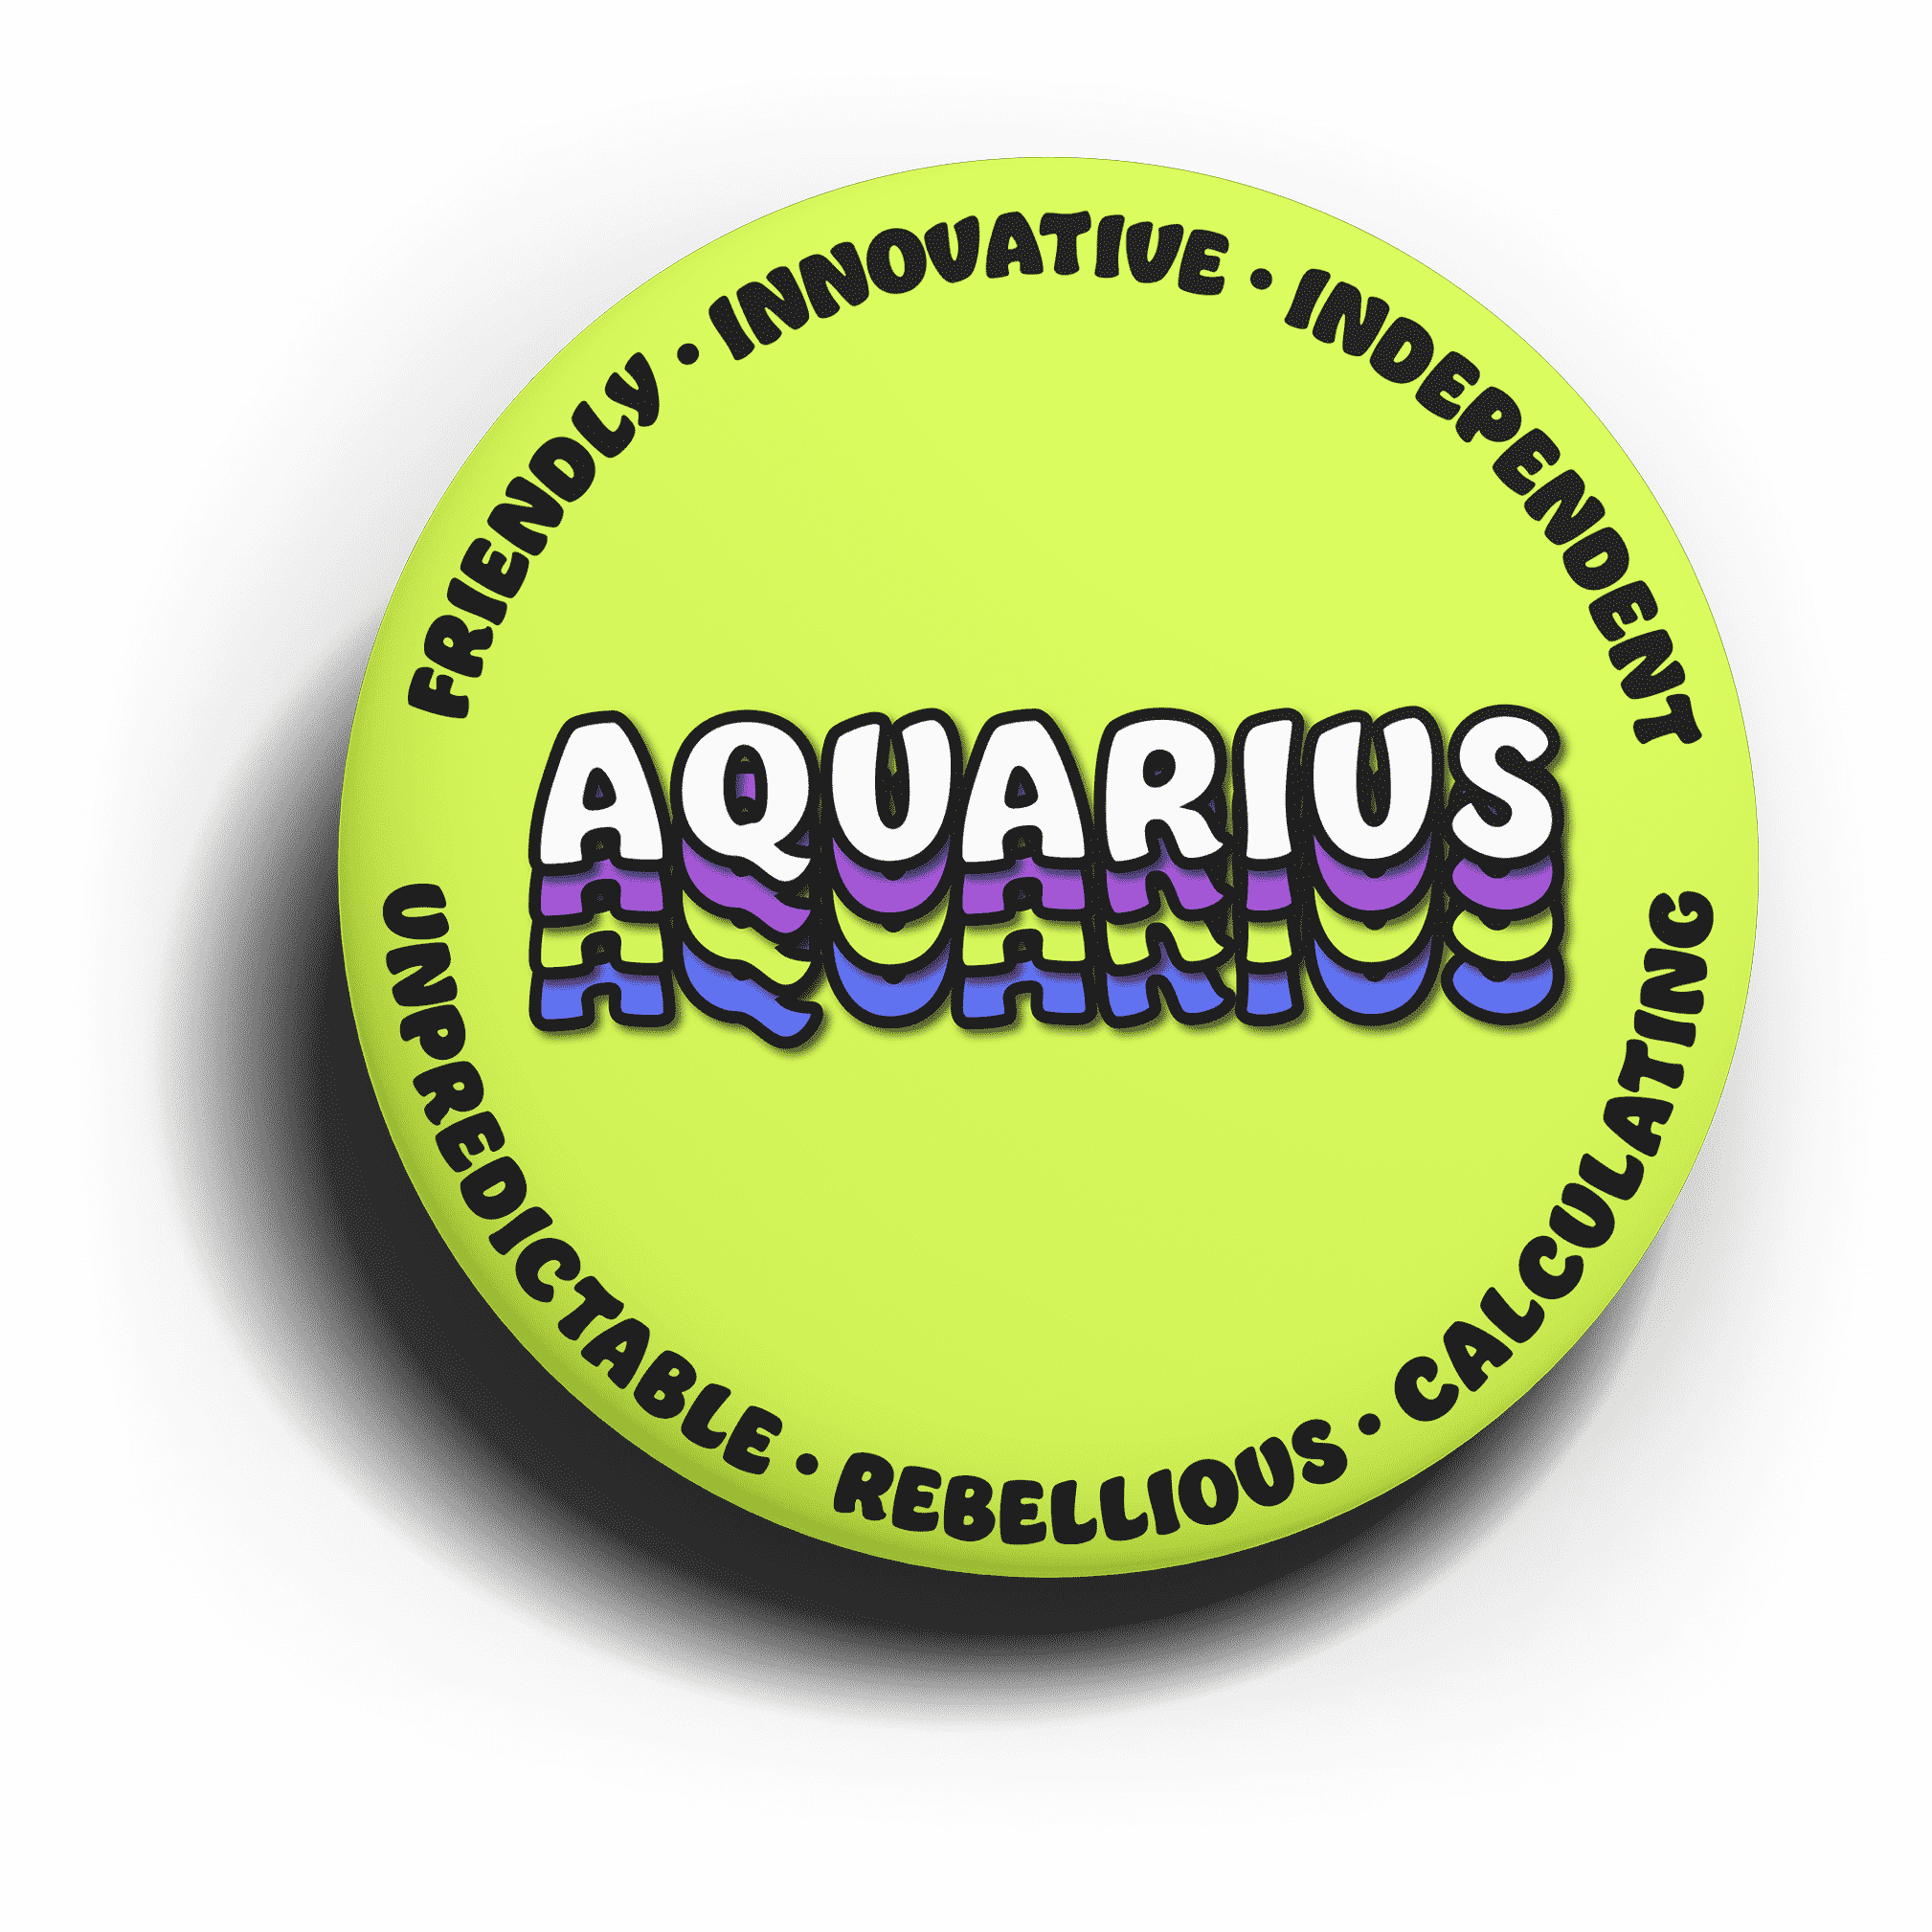 (Zodiac) Aquarius Characteristics